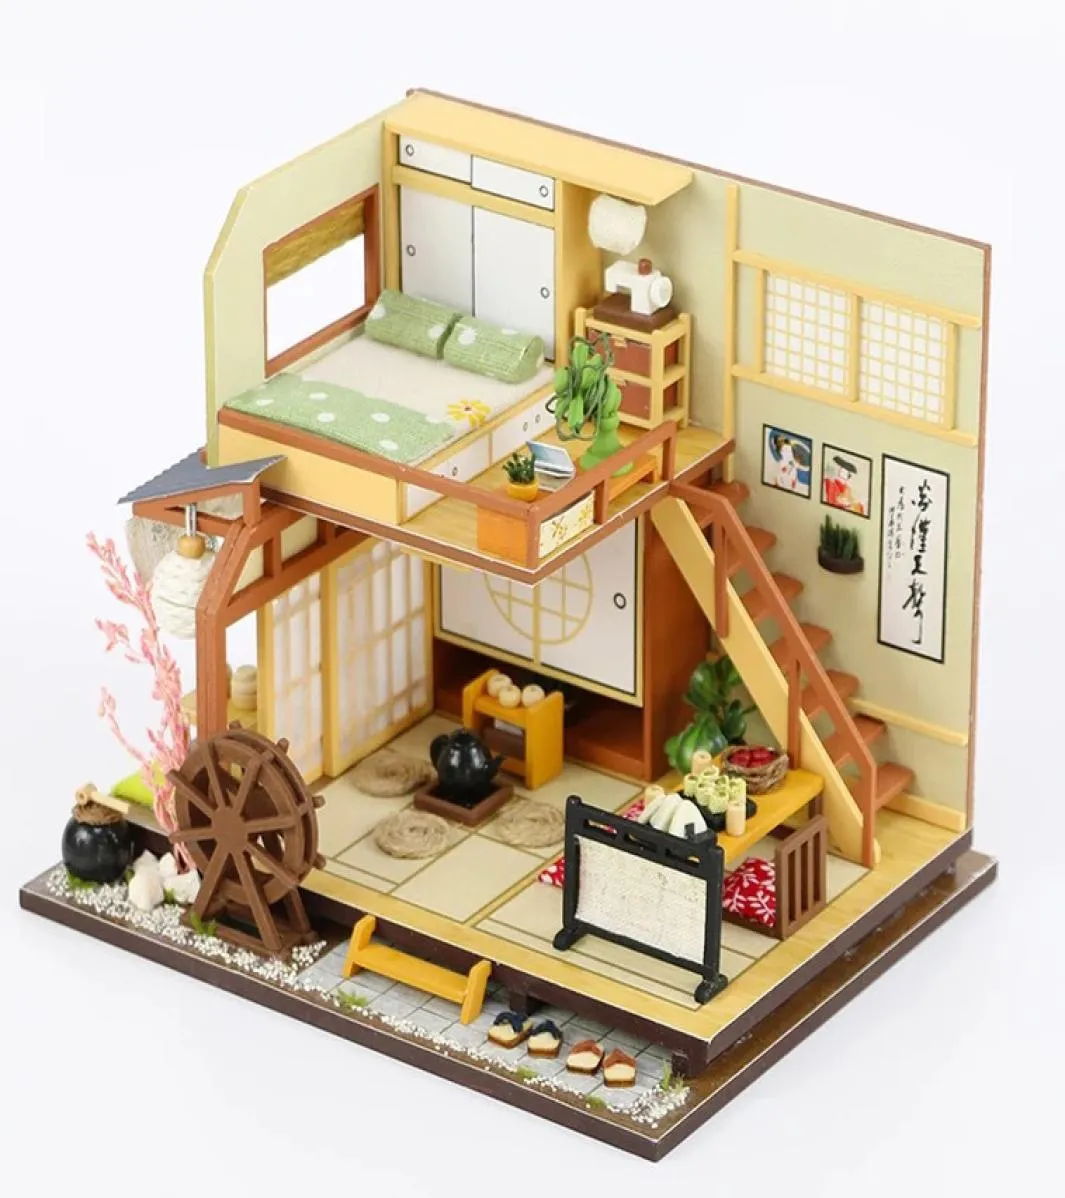 Estilo japonês construção artesanal montagem cabana de madeira diy casa de bonecas em miniatura brinquedo presentes de aniversário em miniatura diy puzzle model5053062